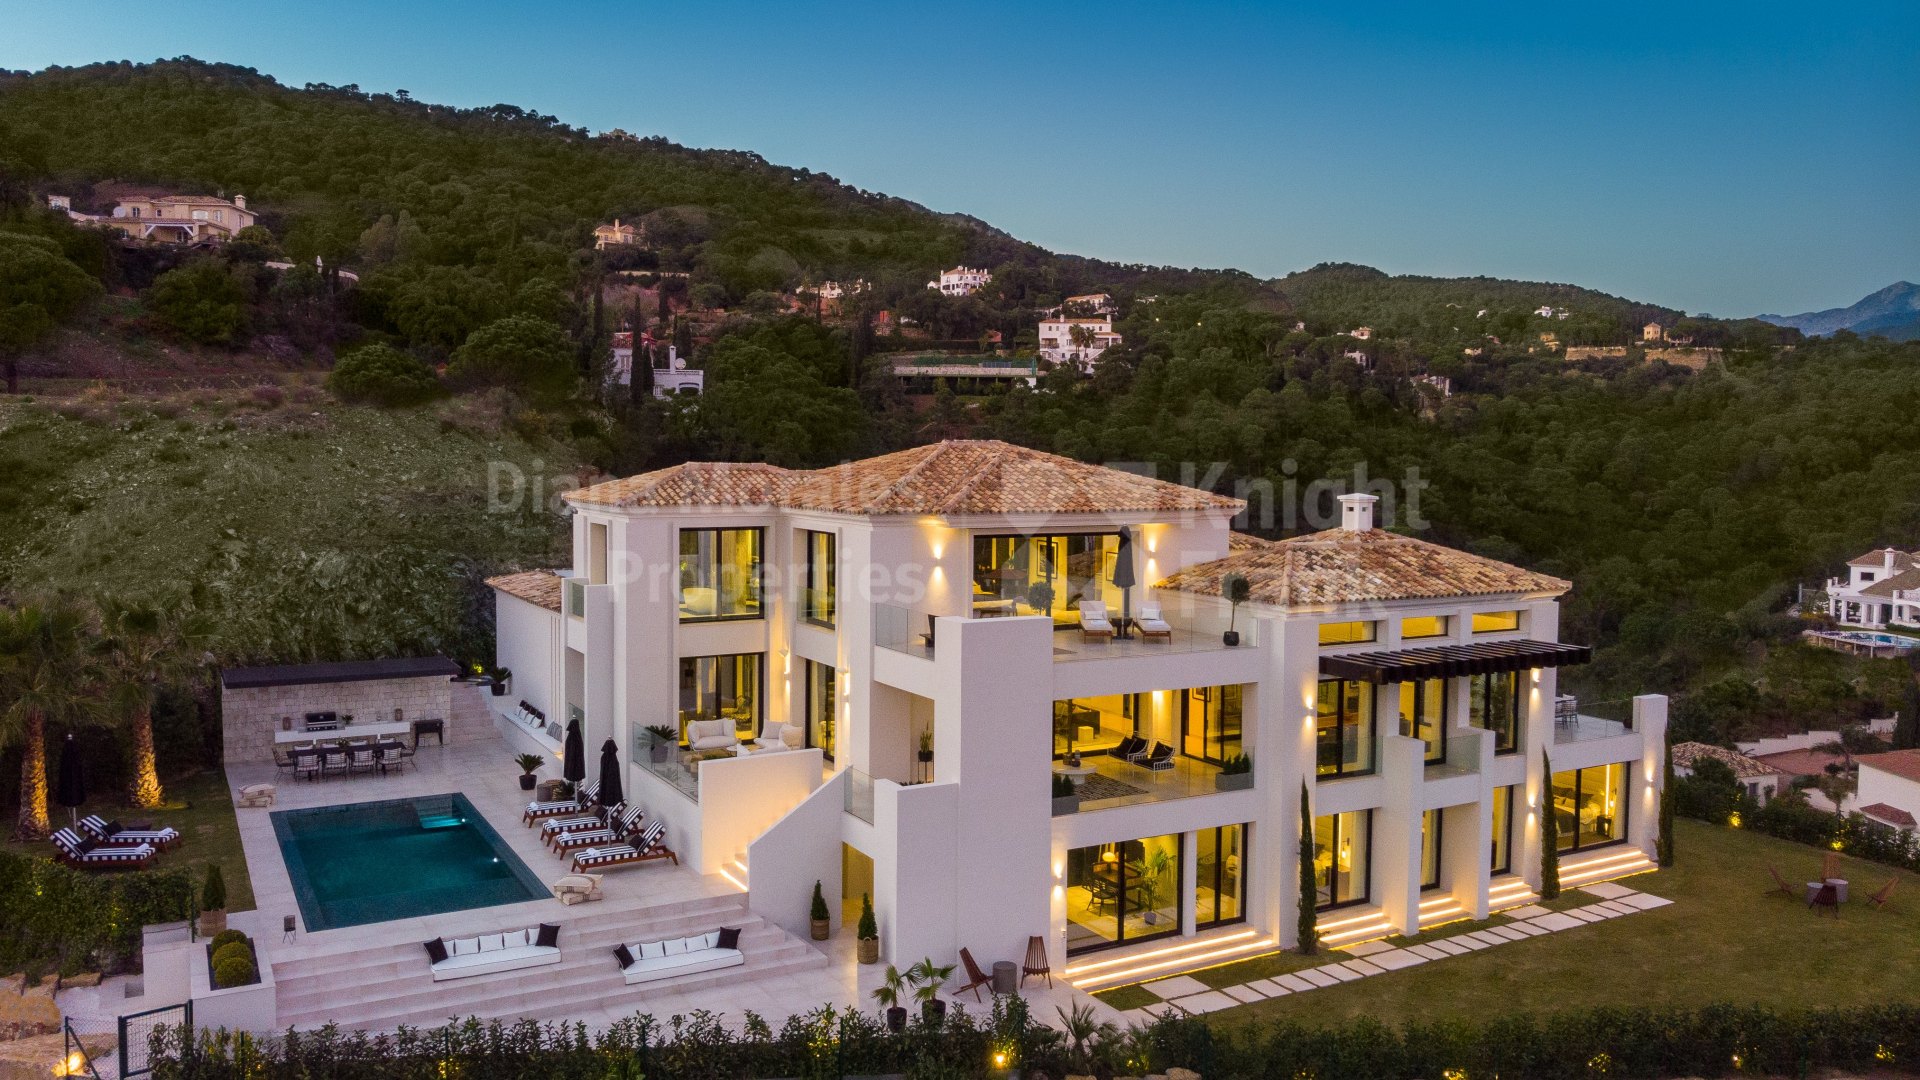 El Madroñal, Oak Valley, villa de style contemporain avec vue sur la mer